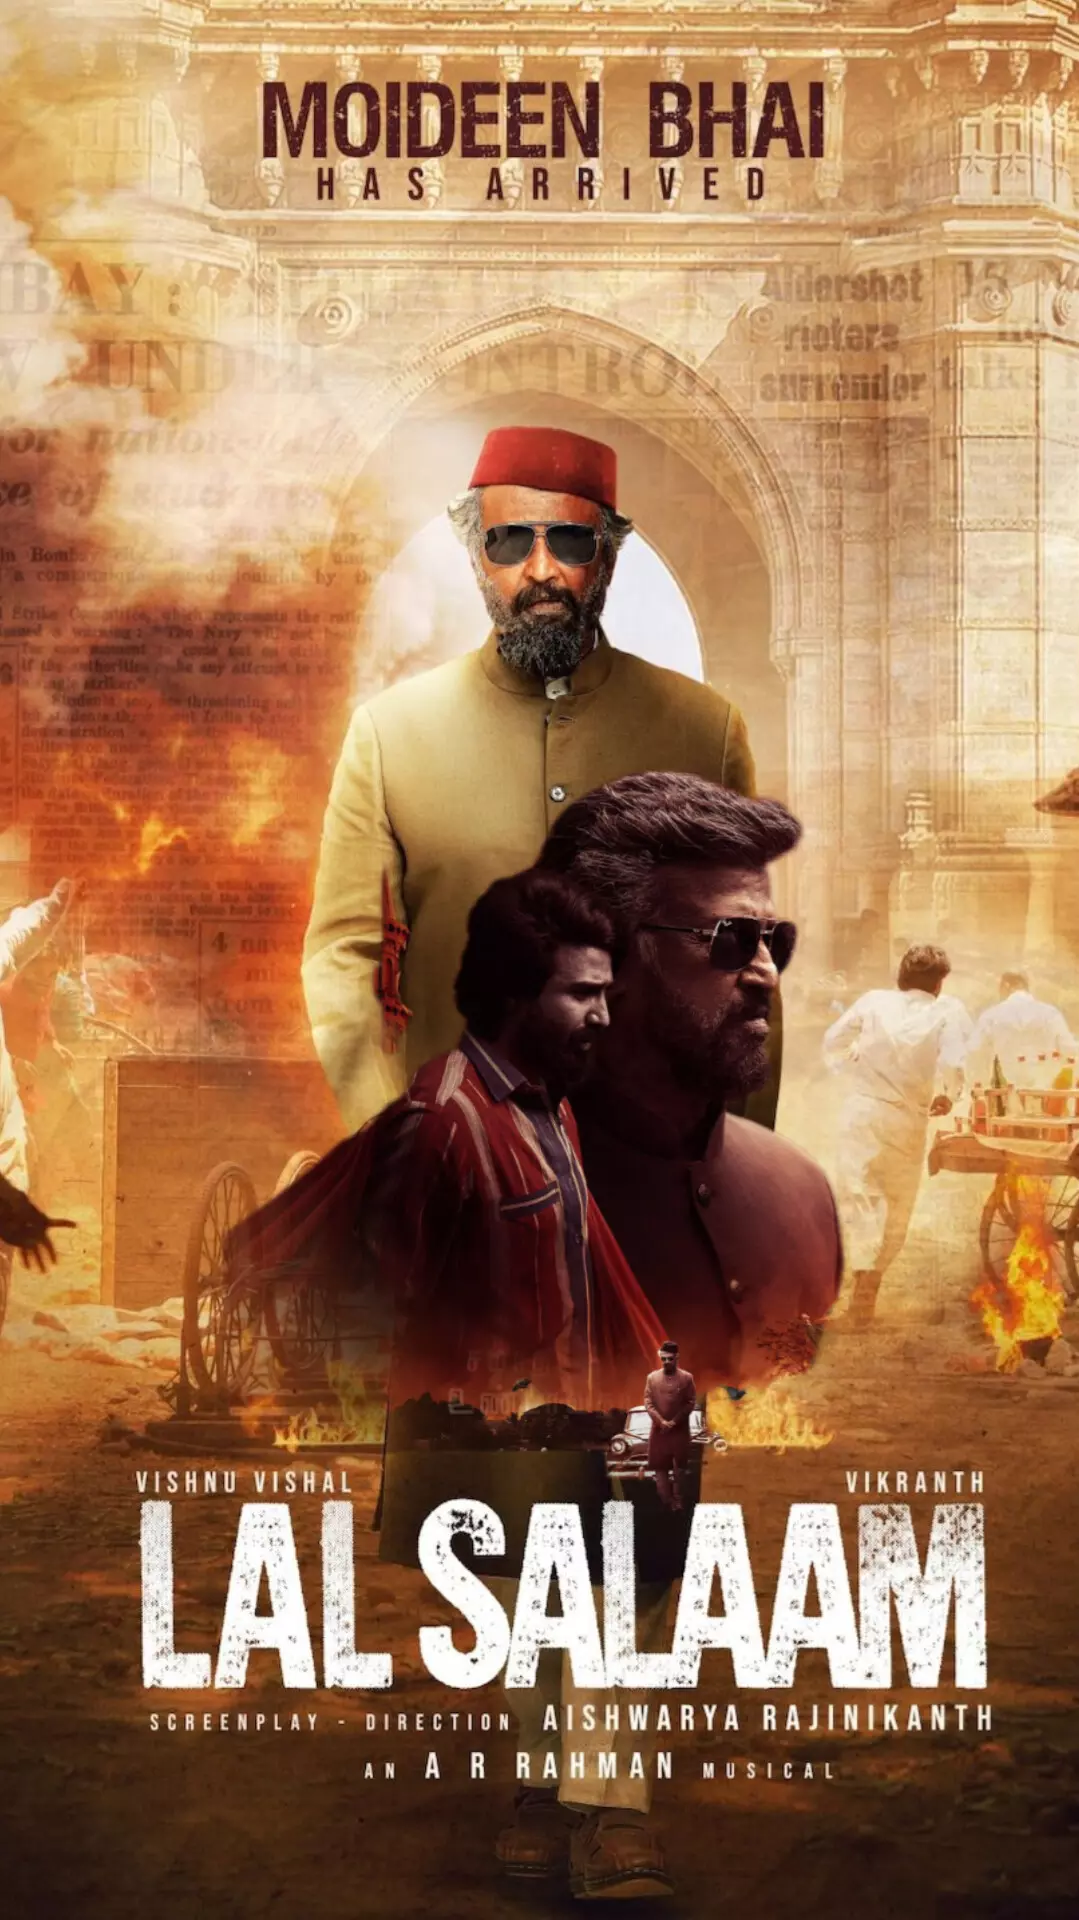 रजनीकांत की शानदार वापसी लाल सलाम 9 फरवरी को सिनेमाघरों में धूम मचा रही है!